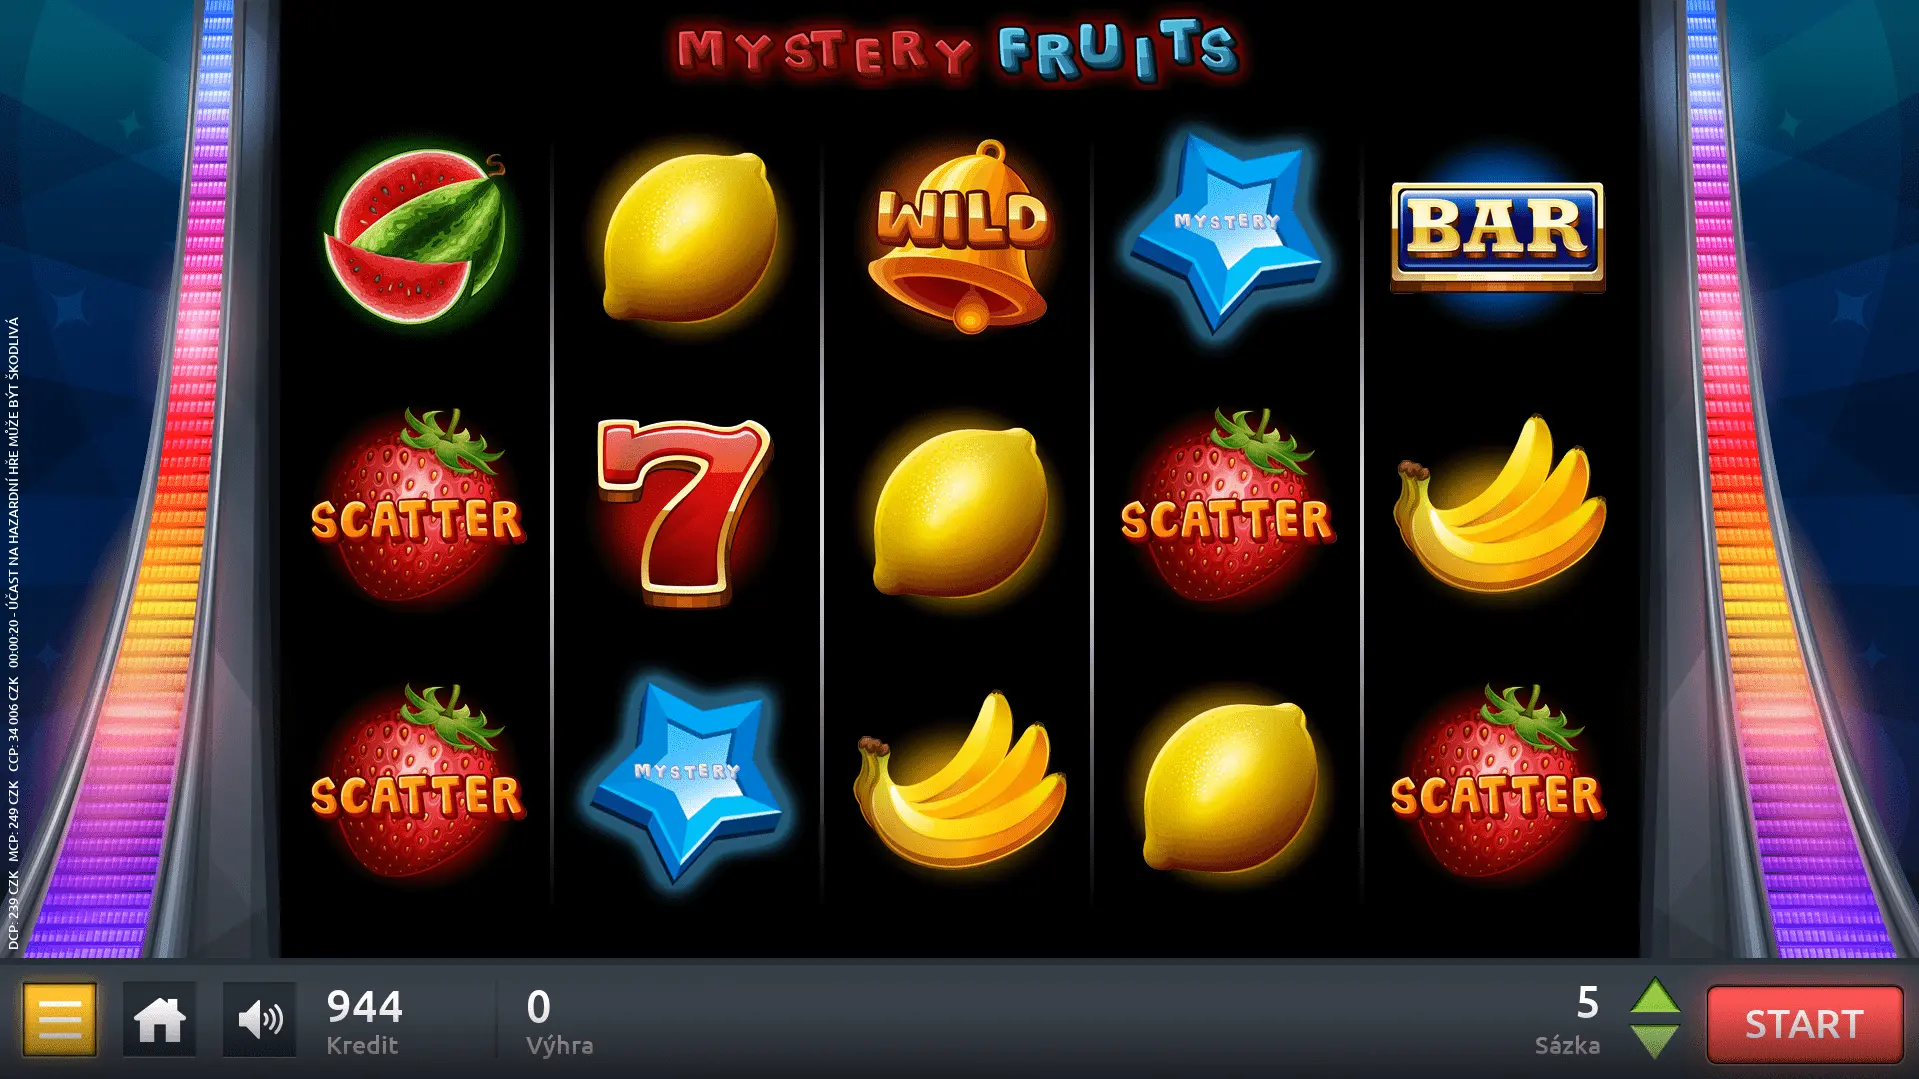 YSTERY FRUITS je hra se pěti válci, obsahuje 12 různých symbolů (pomeranč, citrón, švestka, banán, třešně, víno, meloun, bar, sedmička, scatter, wild, mystery